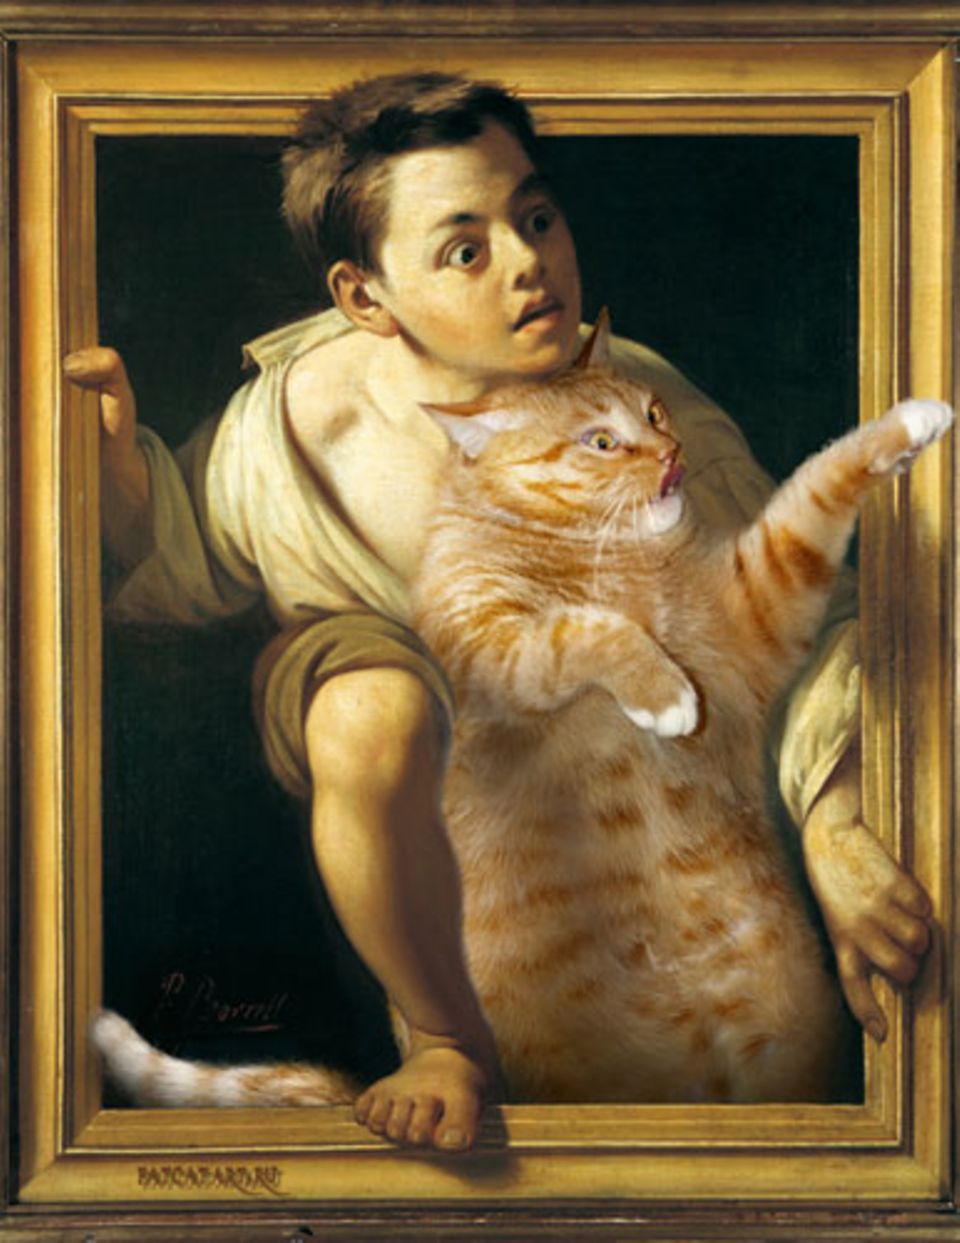 "Flucht vor der Kritik" des spanischen Malers Pere Borrell del Caso kommt Katzen ohnehin entgegen - sie steigen auch lieber gleich ganz aus dem Gemälde, bevor jemand meckern kann.